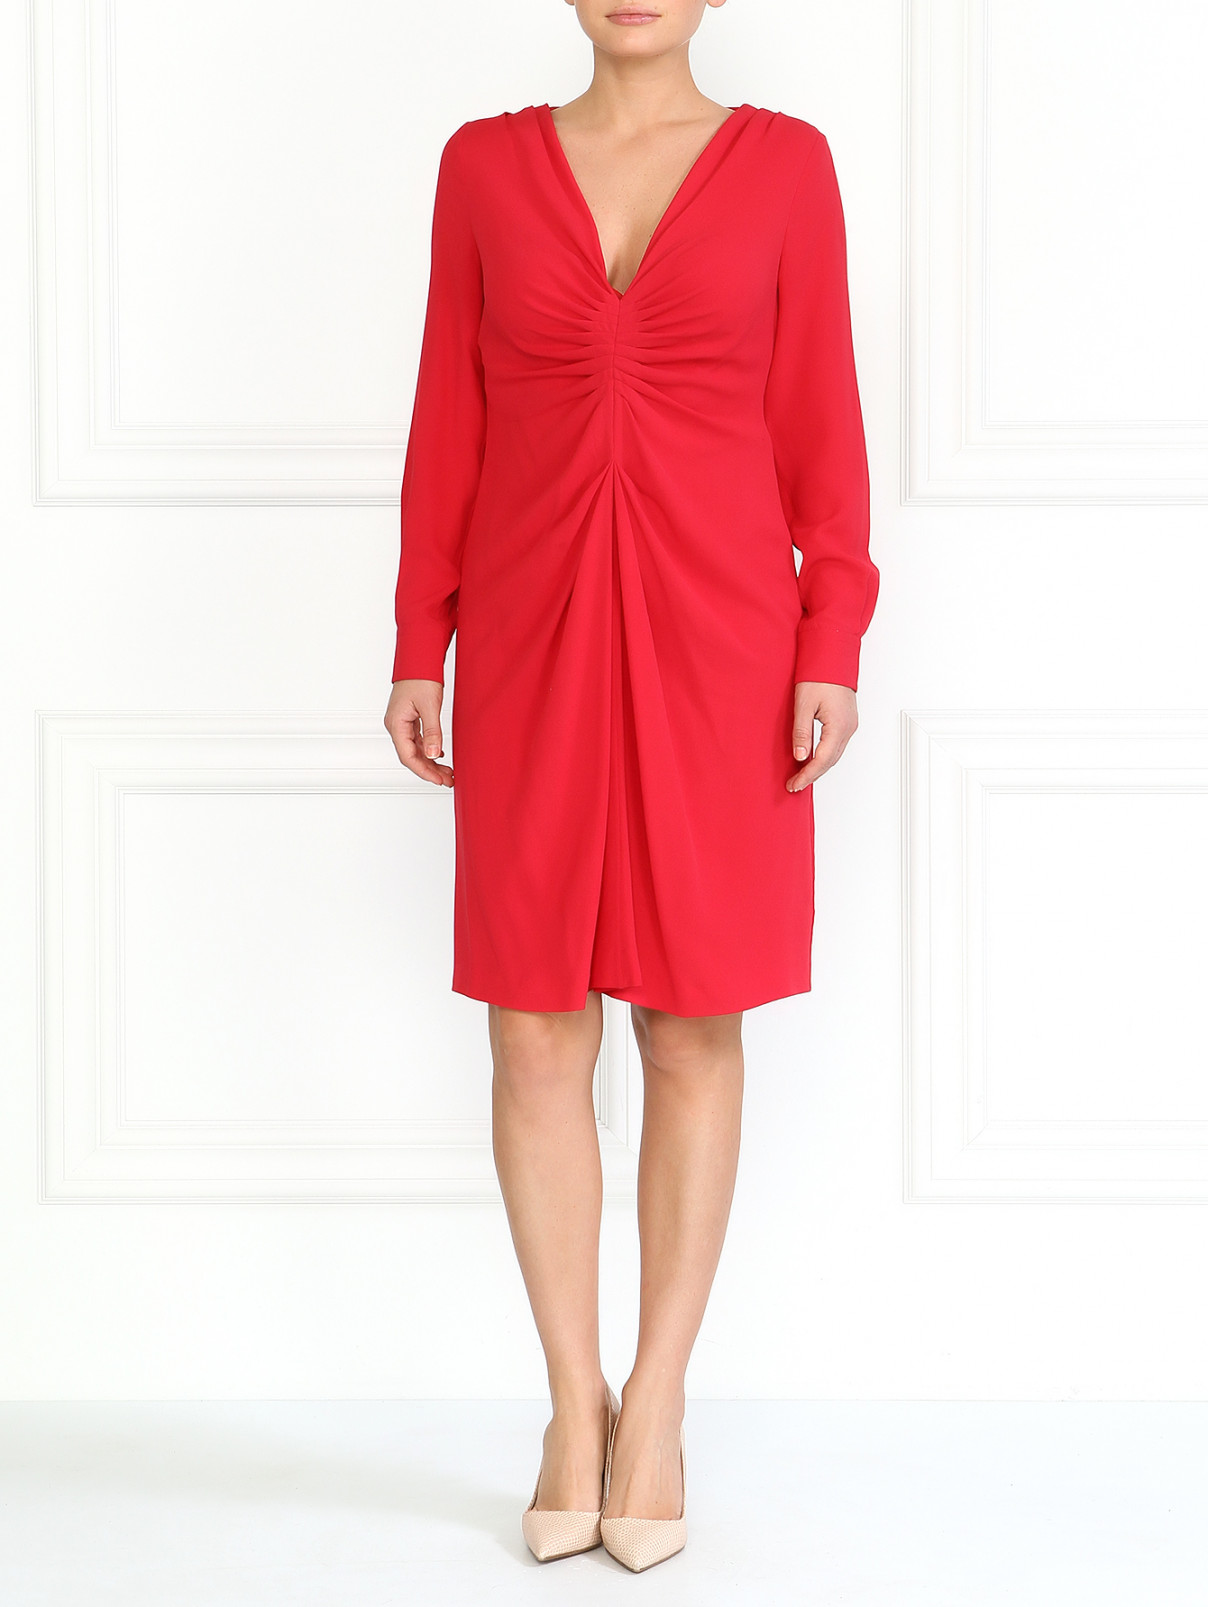 Шелковое платье Moschino  –  Модель Общий вид  – Цвет:  Красный